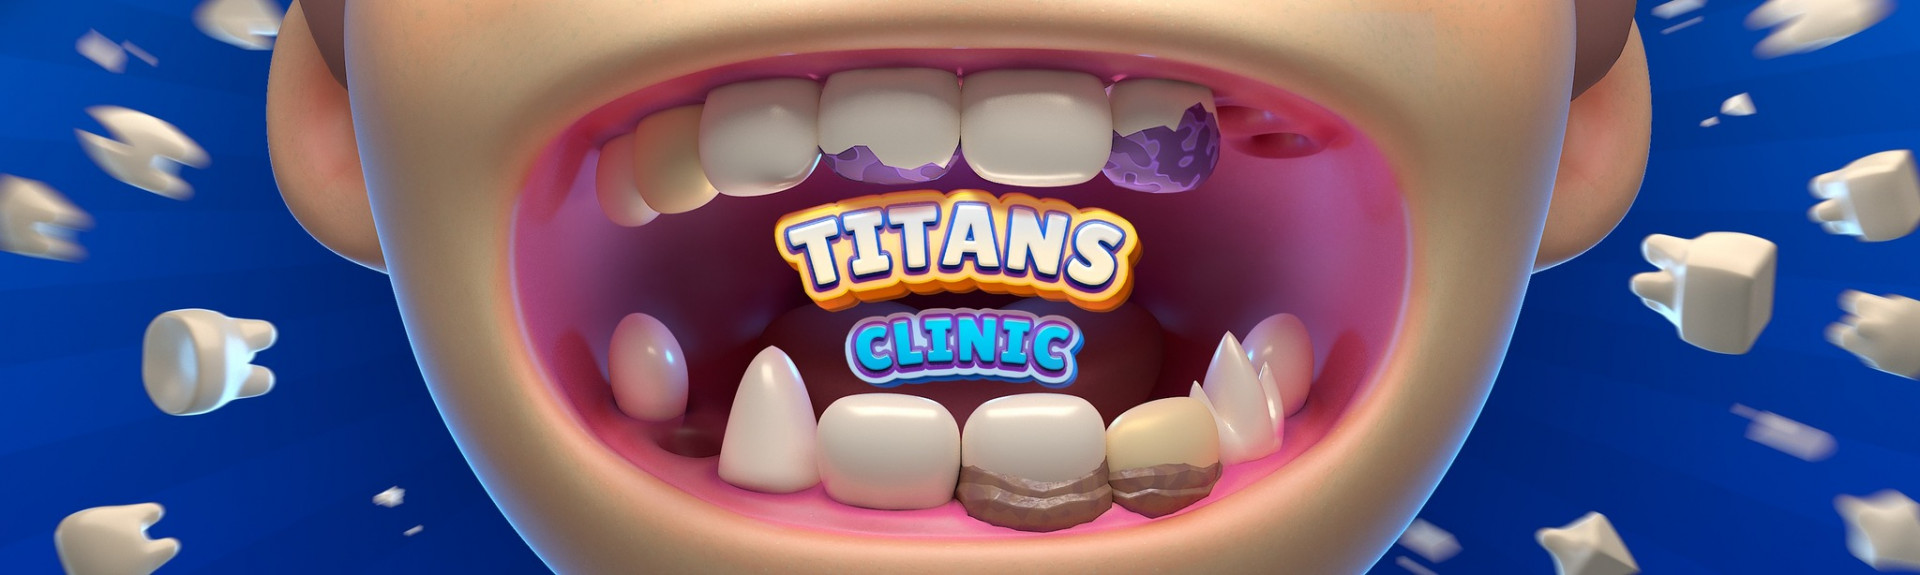 Titans Clinic